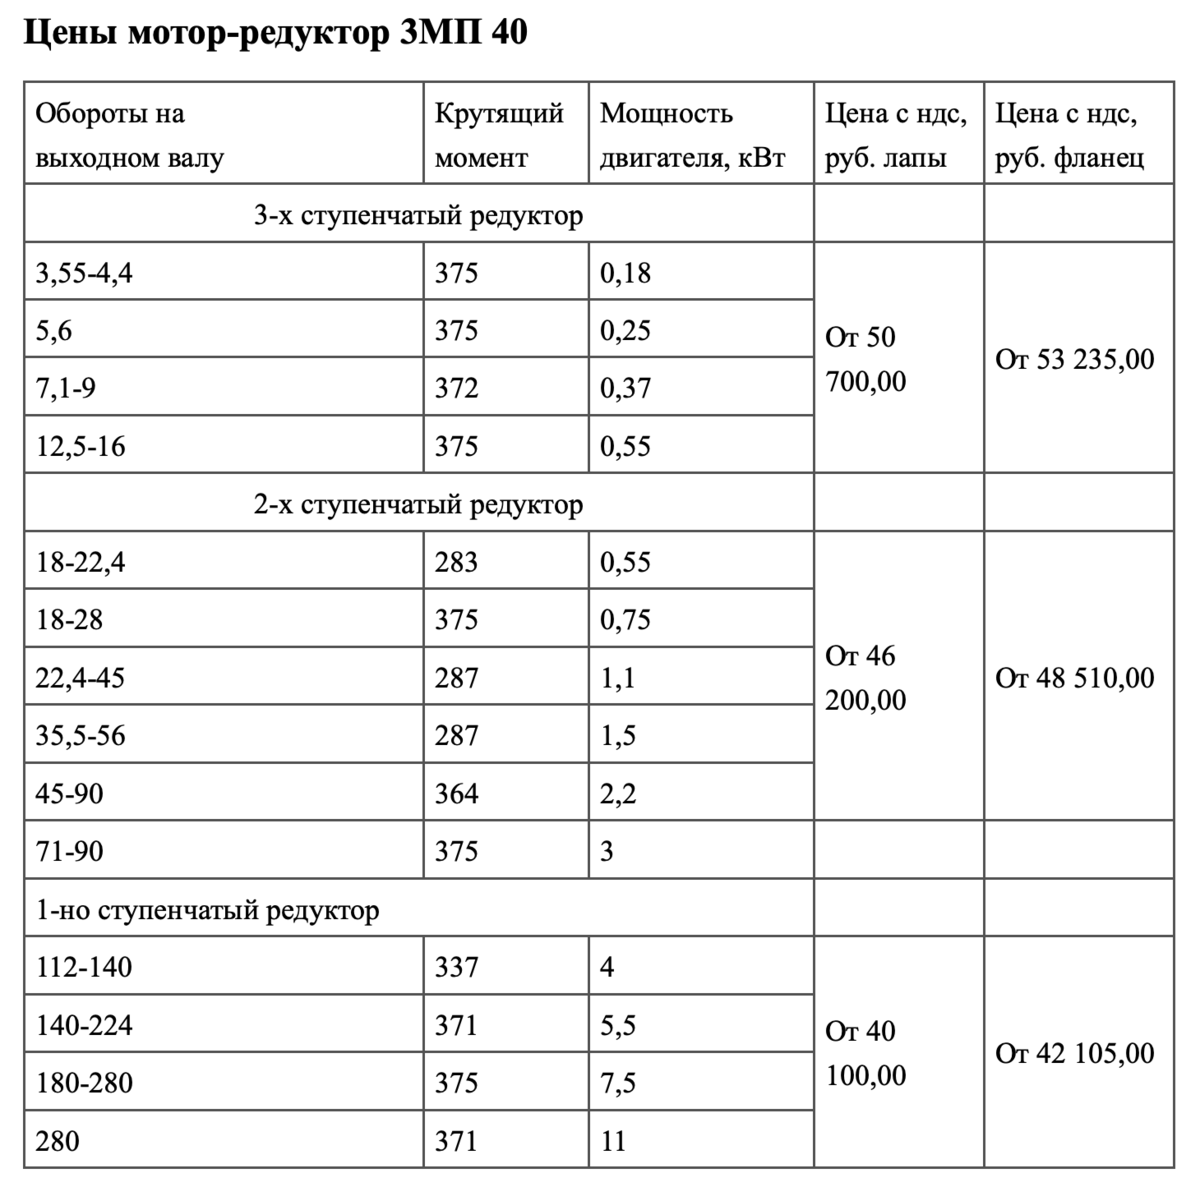 Цены редуктор 3МП-40